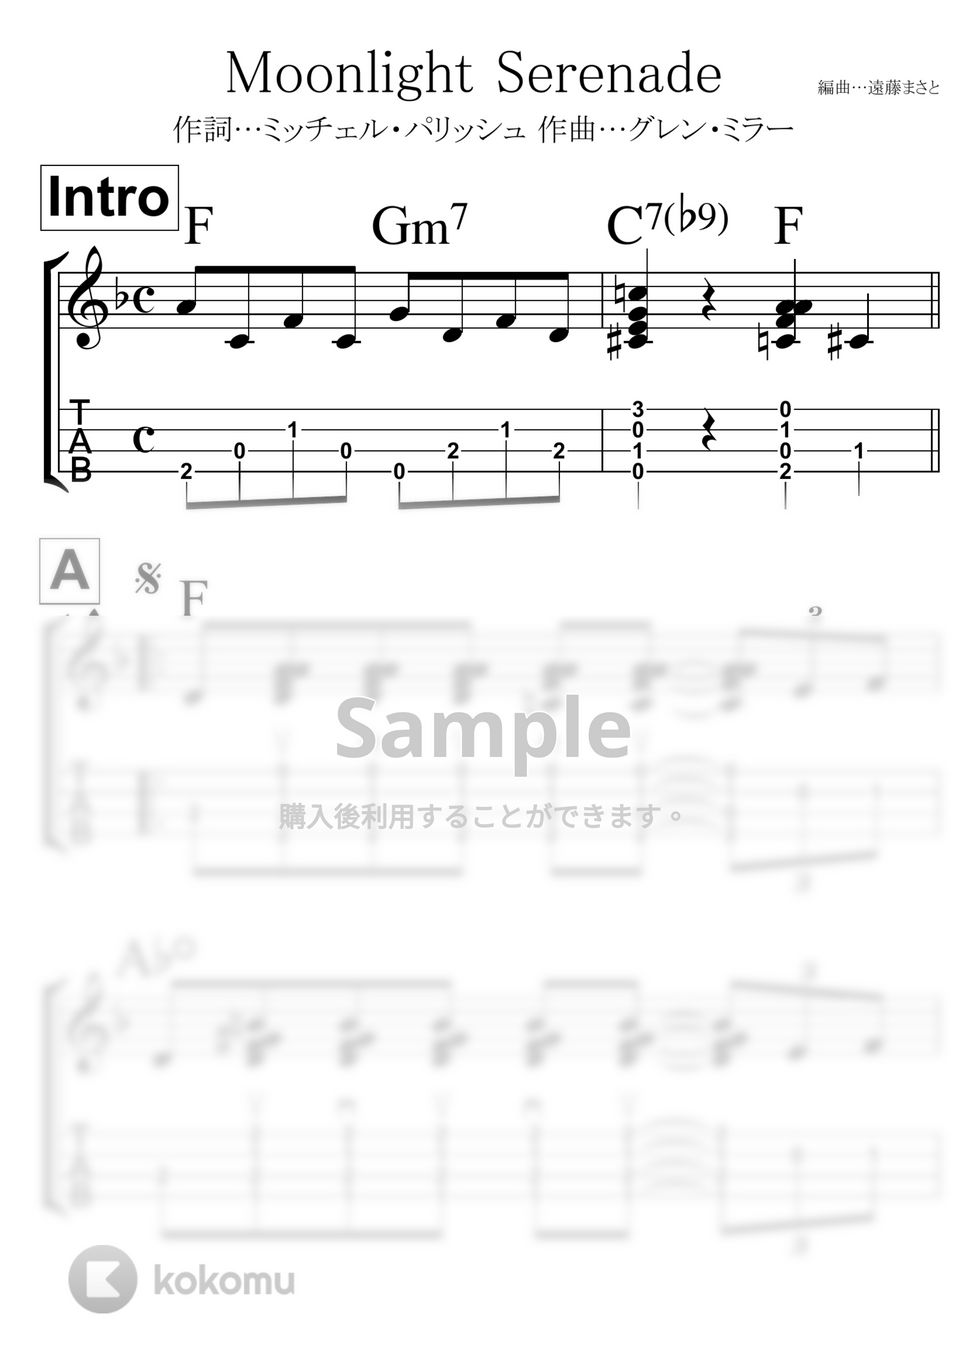 グレン・ミラー - Moonlight Serenade ムーンライトセレナーデ(モノクロ) by 遠藤まさと